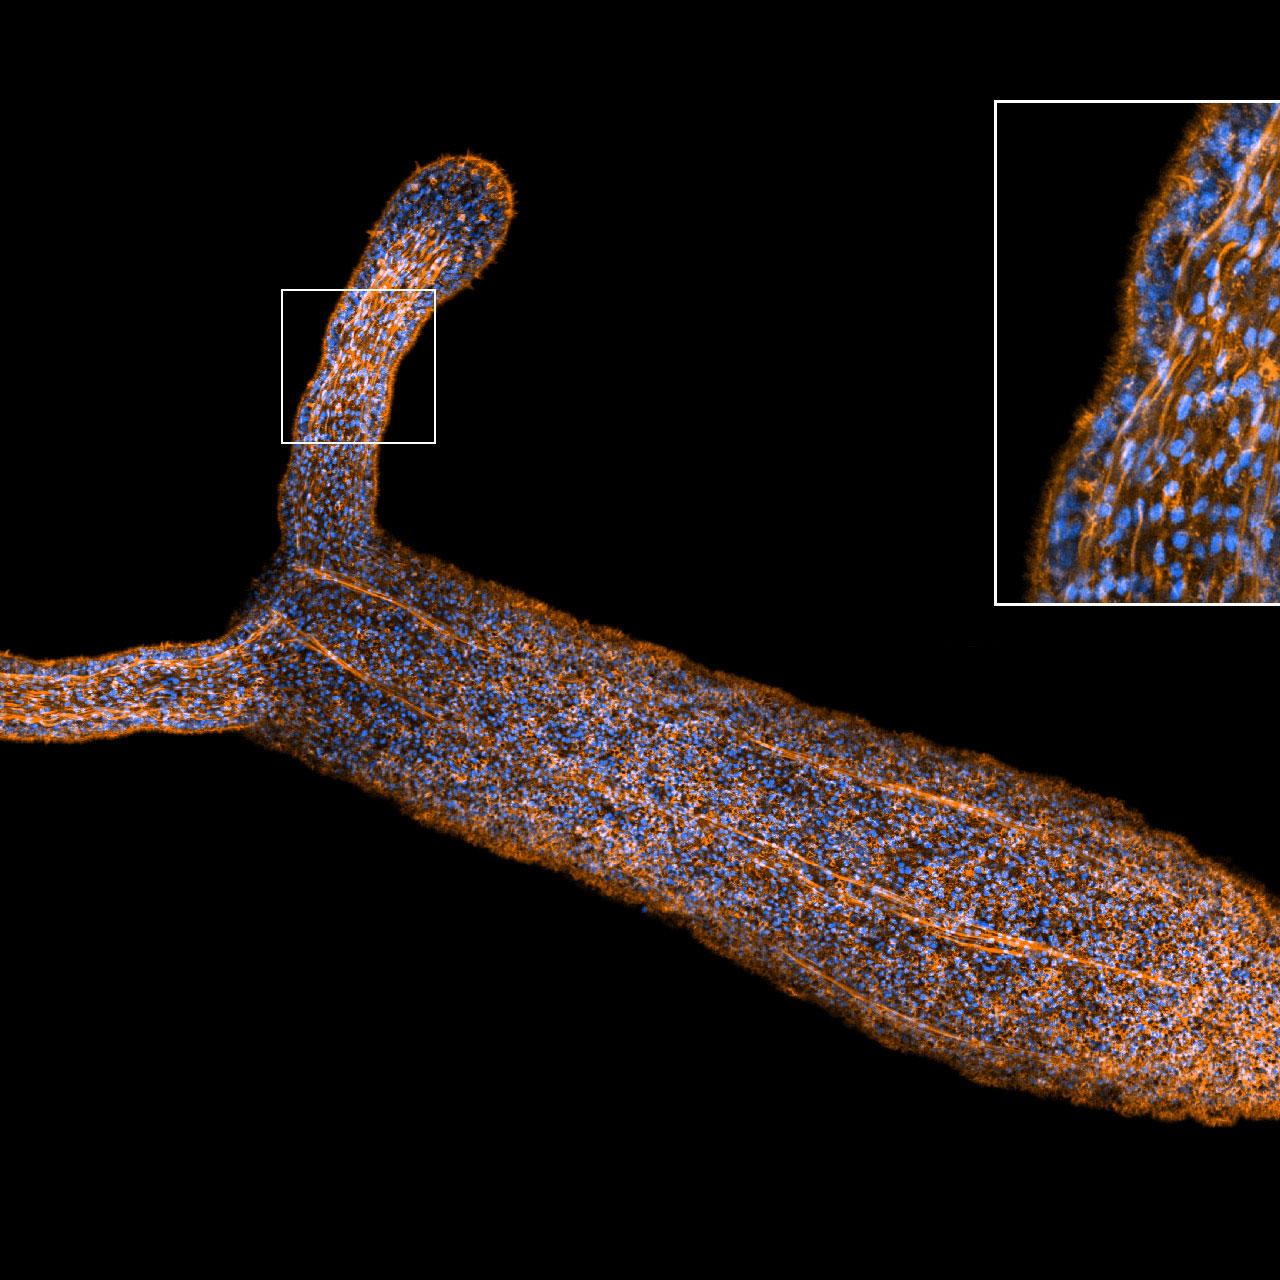 使用Airyscan 2高灵敏度模式成像的小星海葵（Nematostella vectensis）。